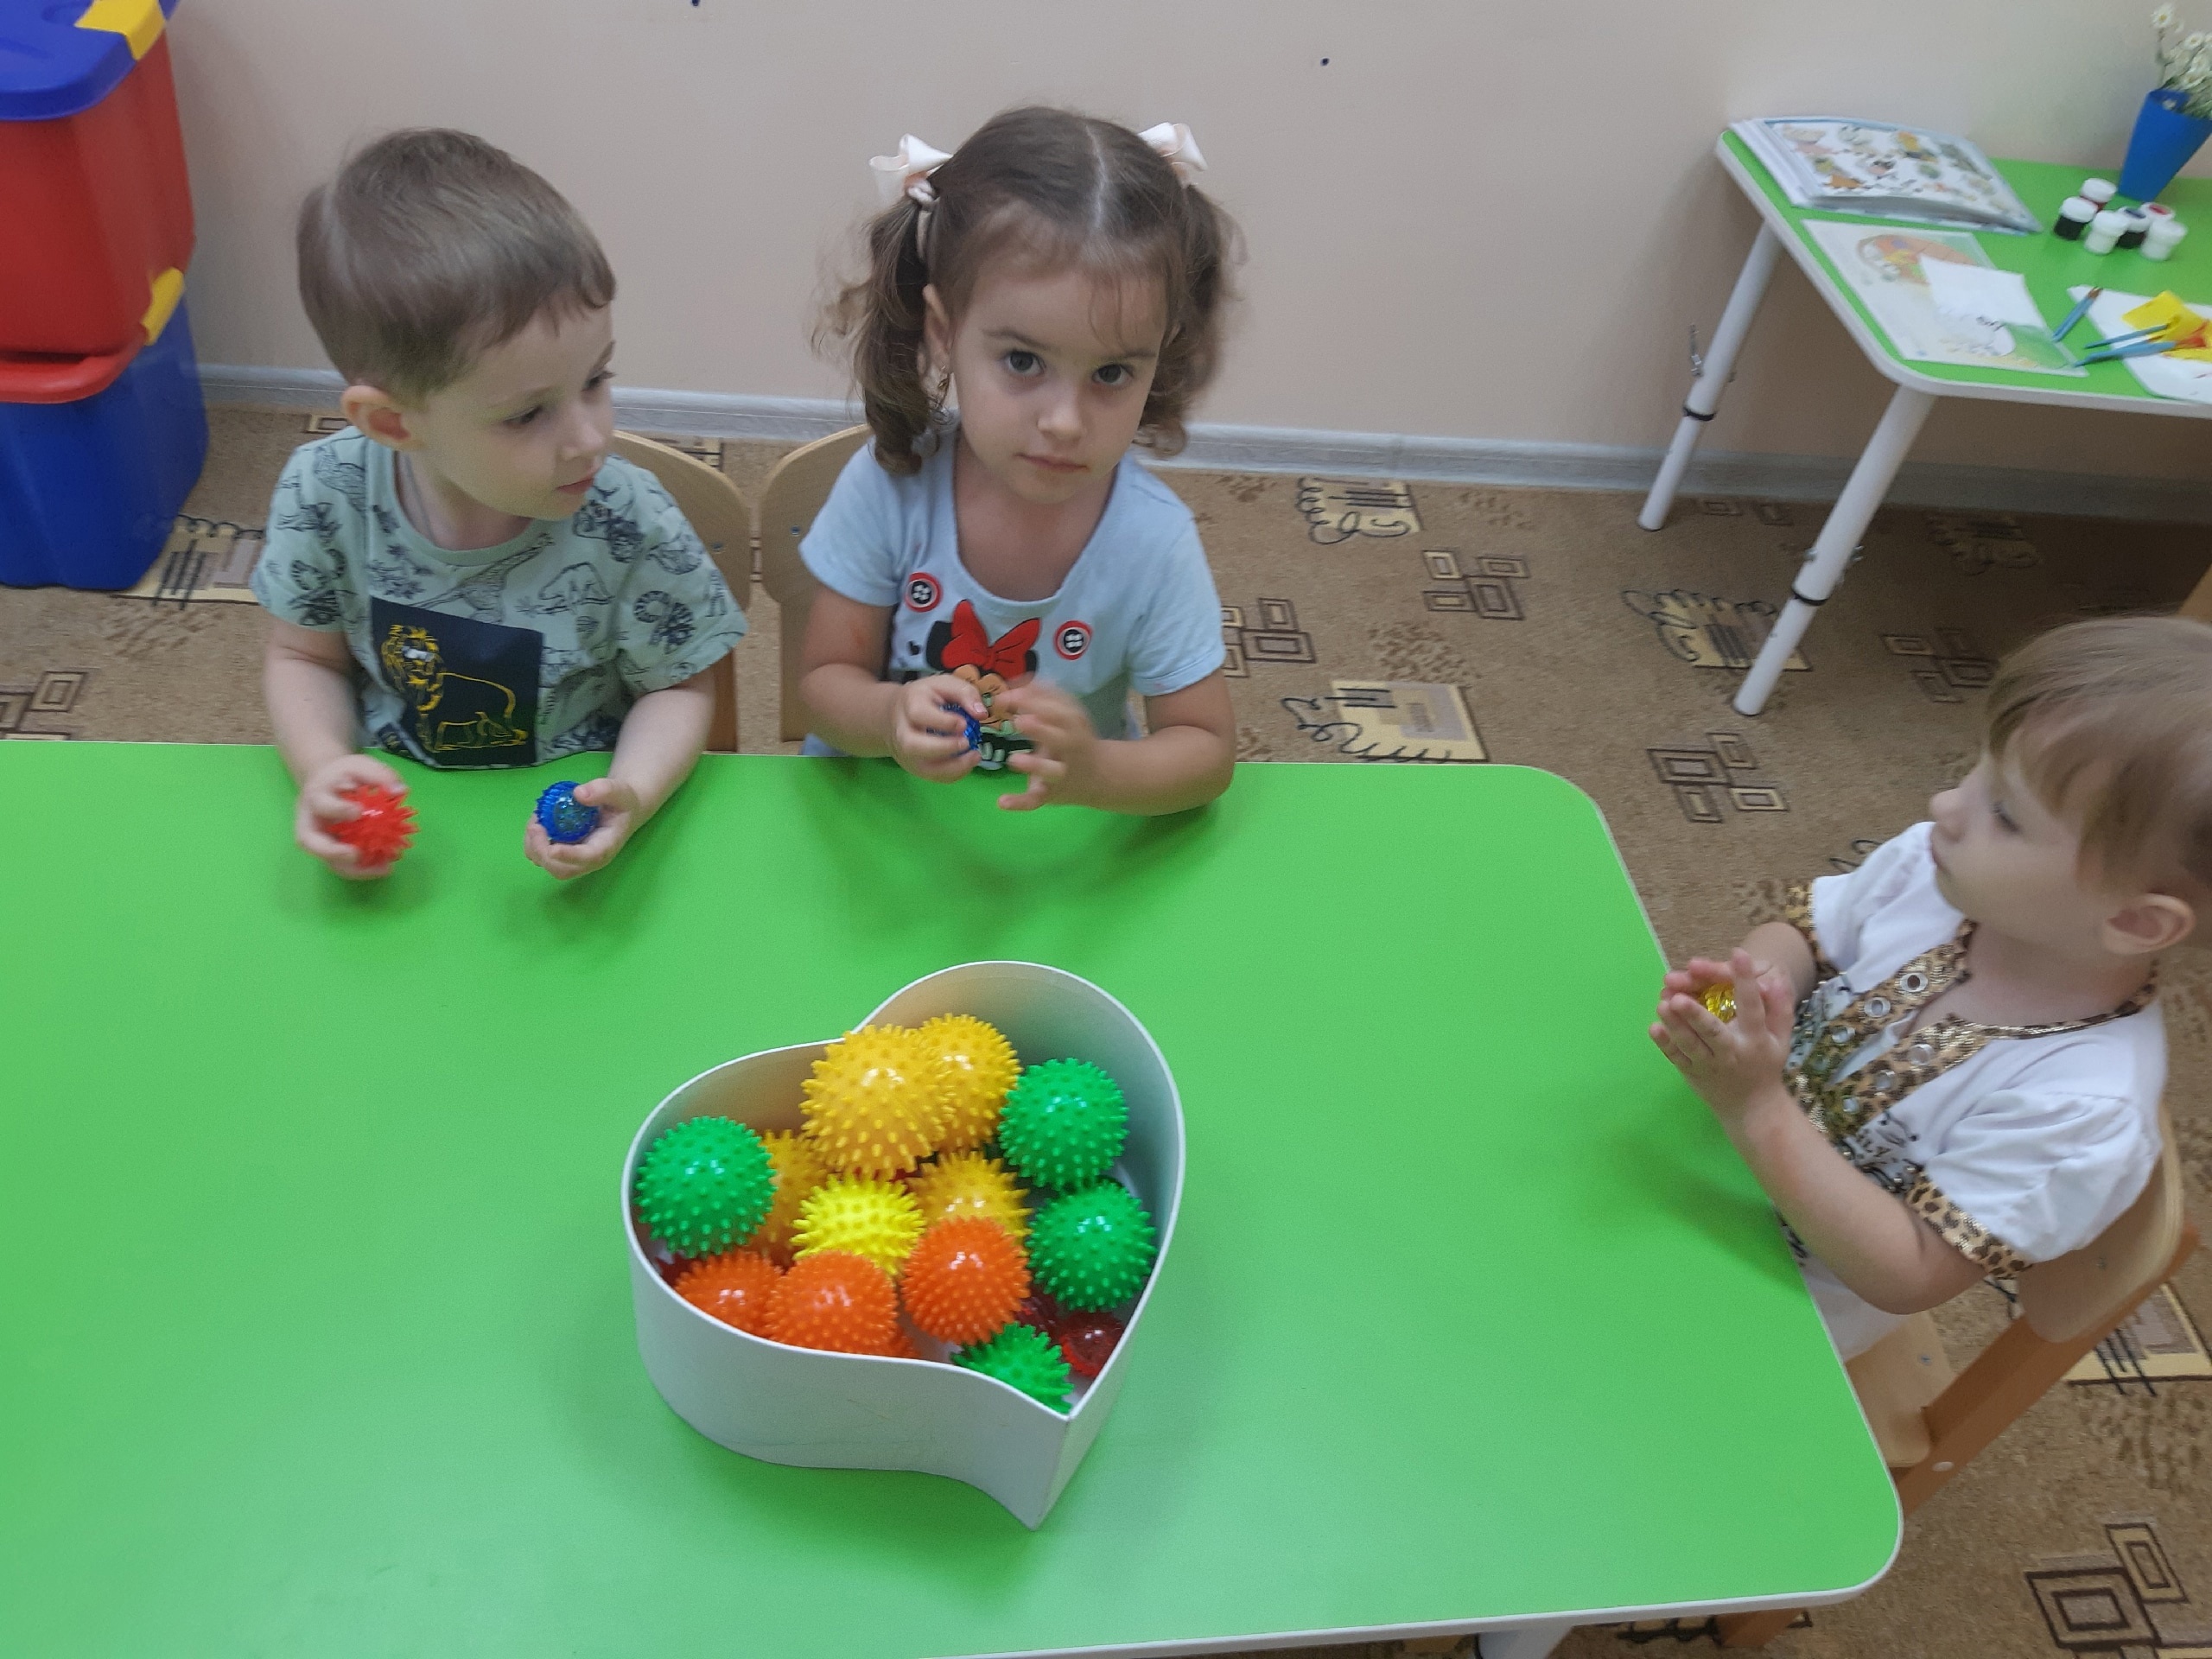 Центр развития личности ребёнка "Светлячок" объявляет набор детей от 2 до 7 лет